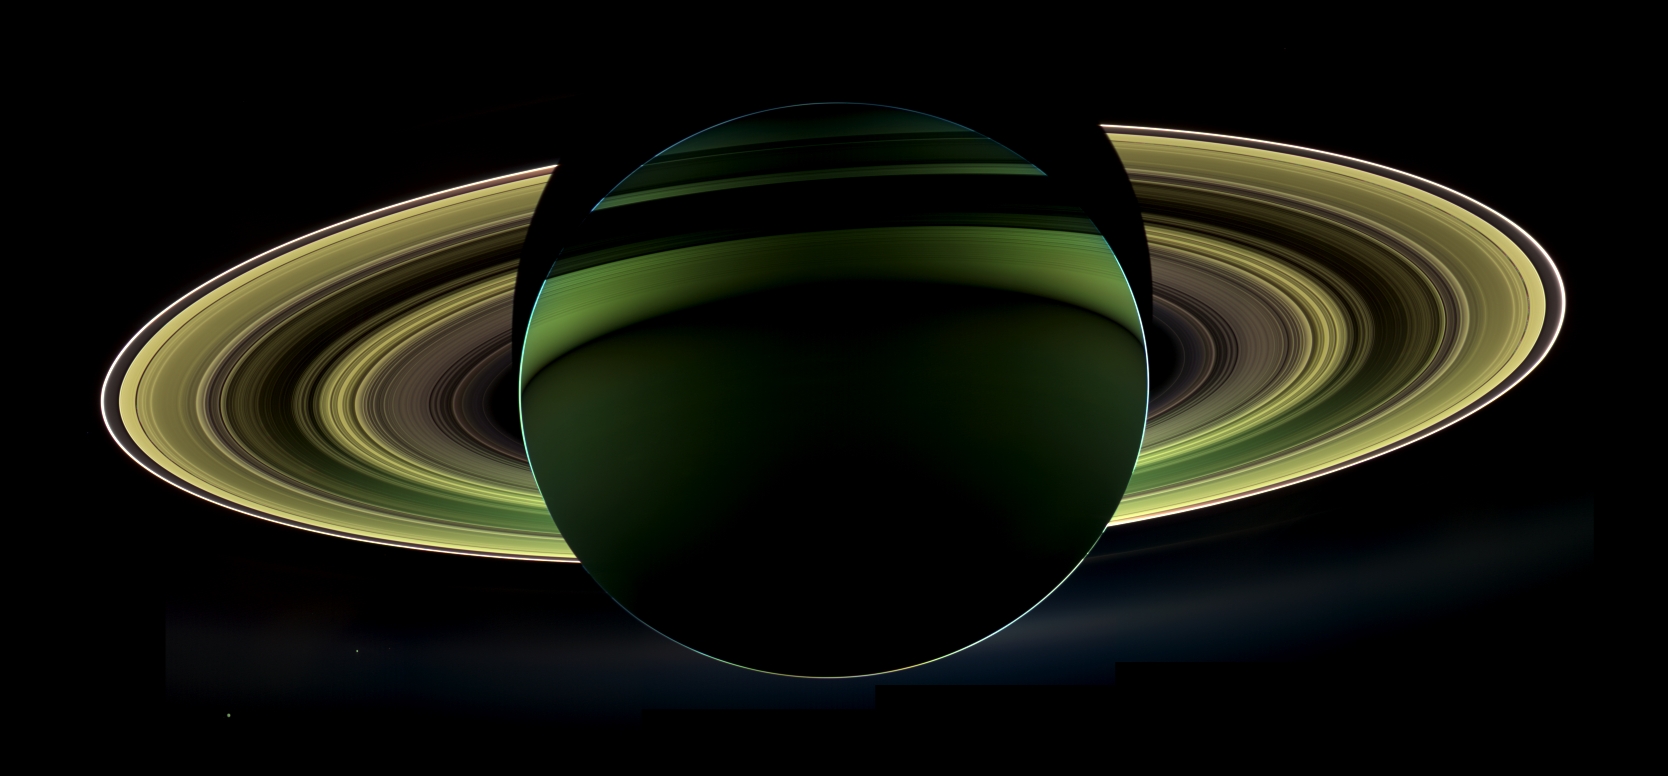 Saturne photographiée à contre-jour le 17 octobre 2012 par la sonde spatiale Cassini. Cette dernière vient de fêter ses 15 ans dans l'espace. © Nasa, JPL, Caltech, SSI